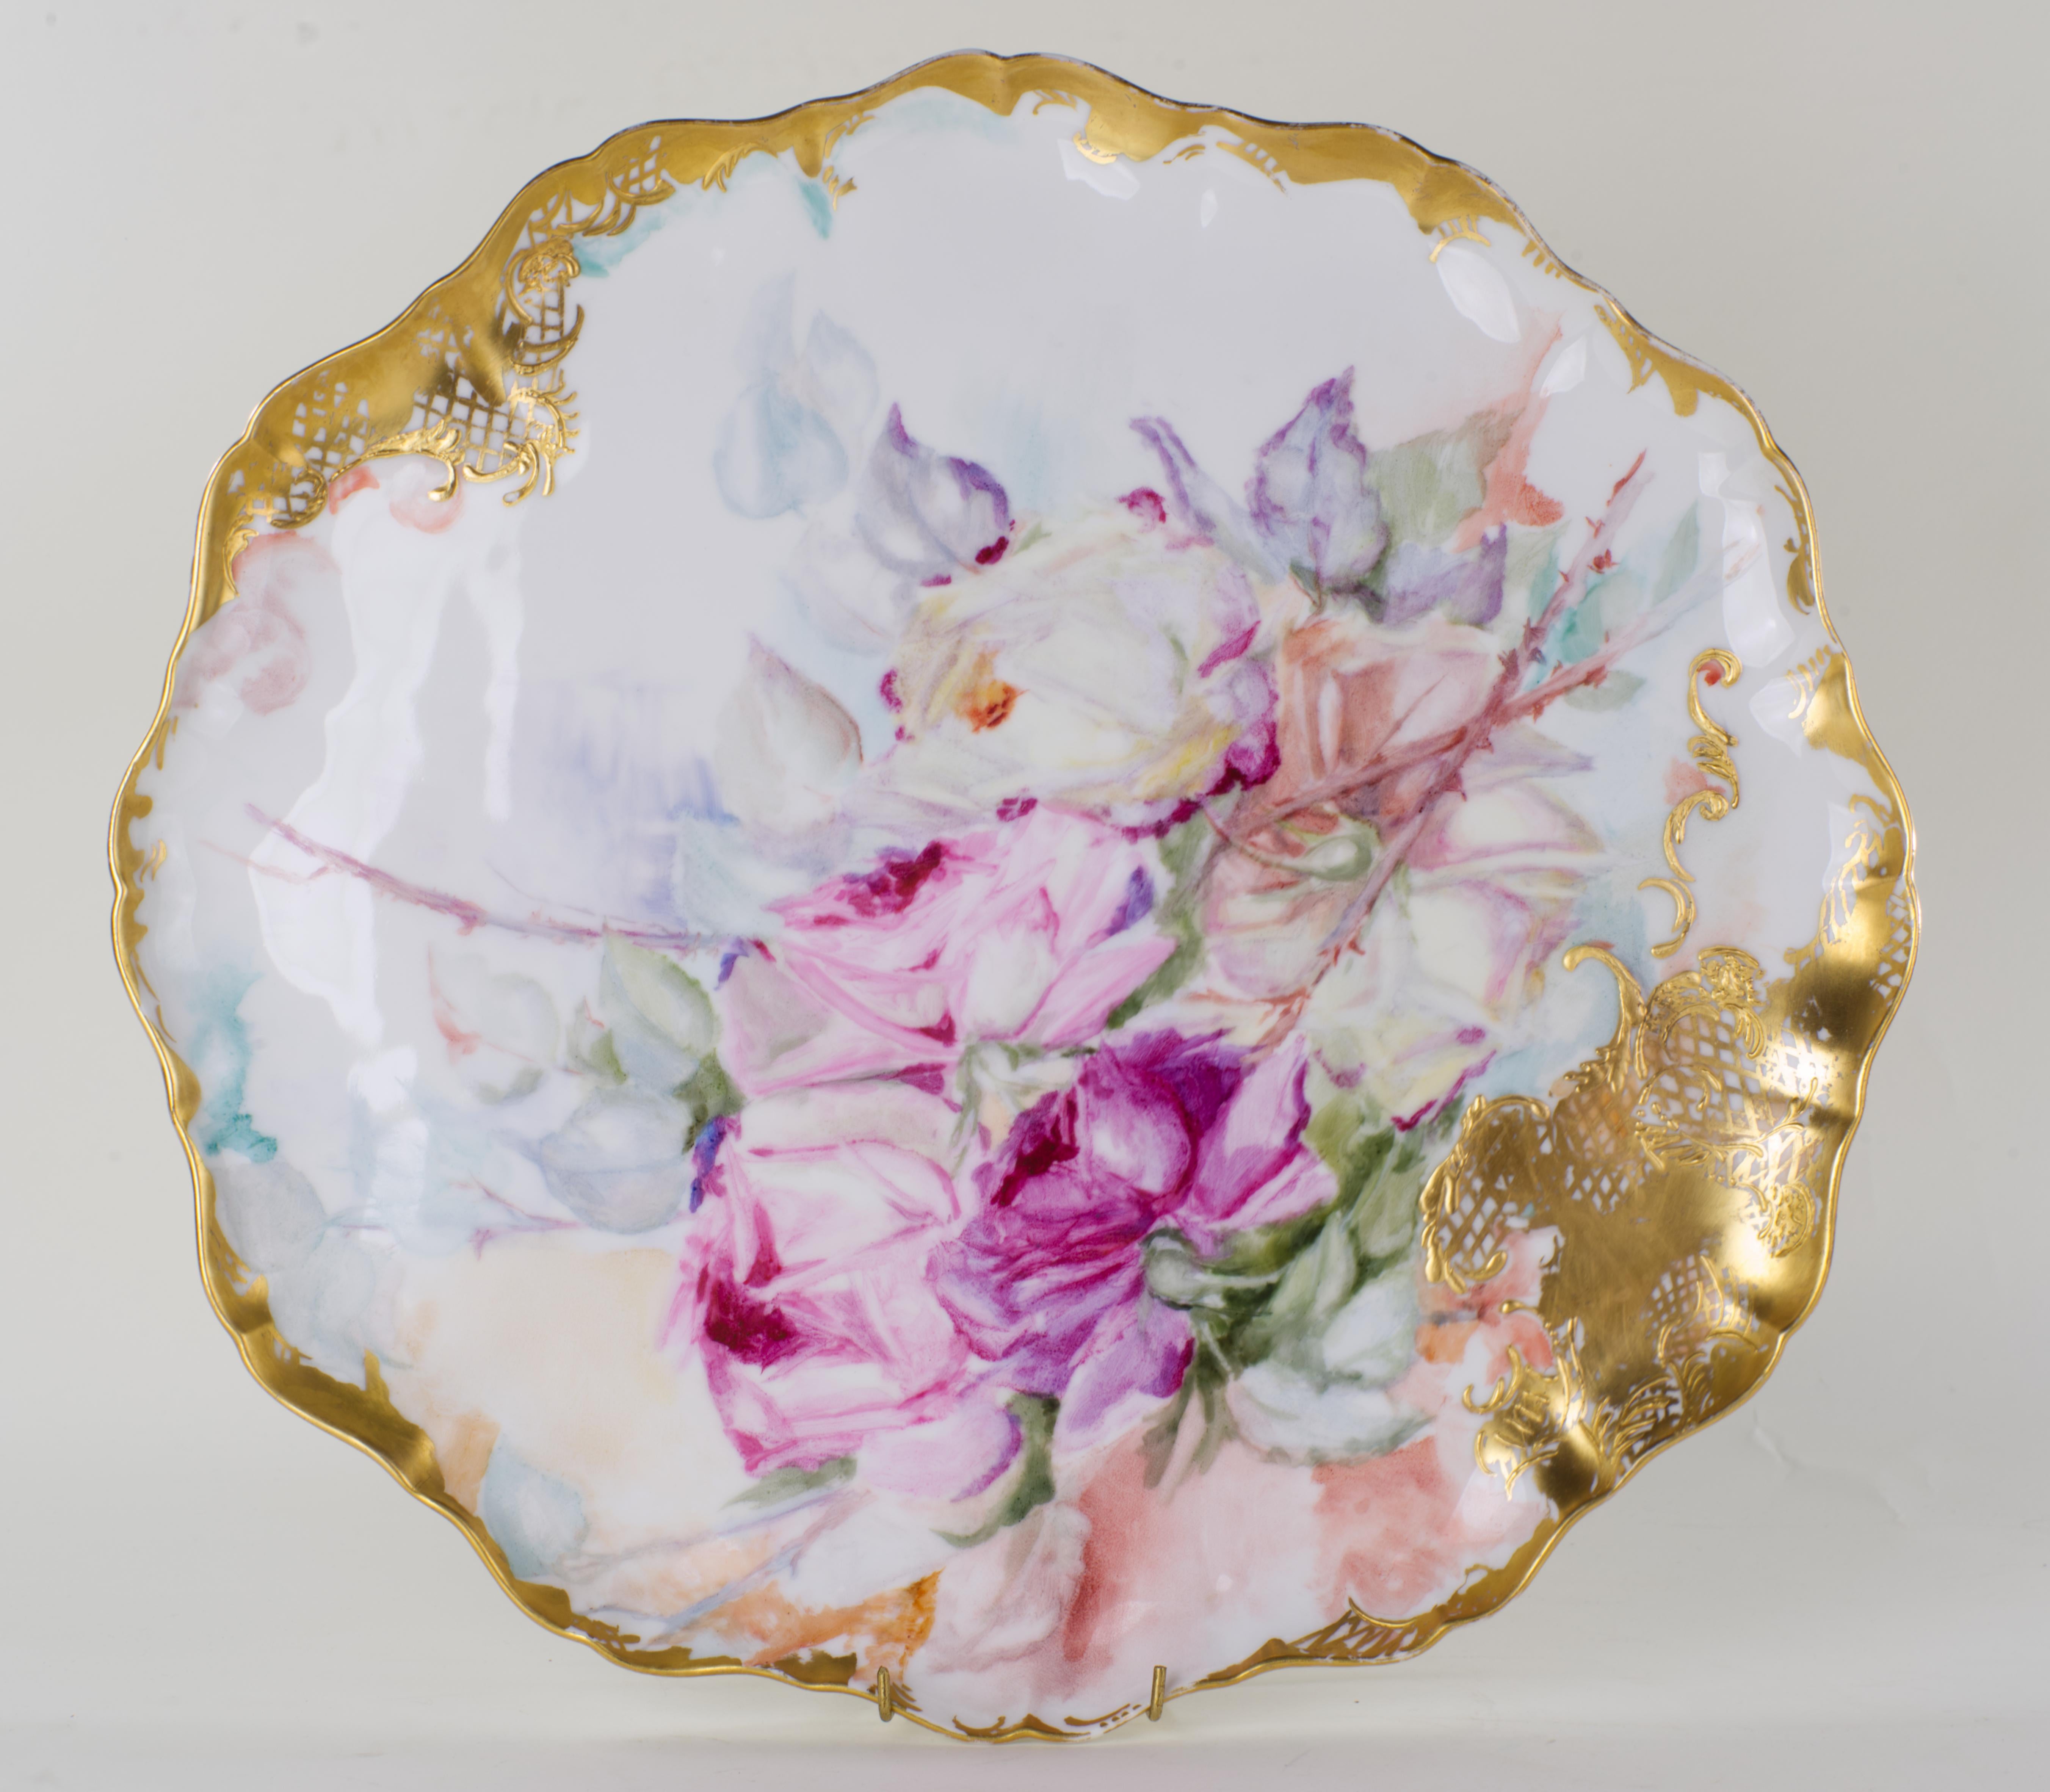 Le grand plateau ovale en porcelaine est peint à la main d'un bouquet de roses dans différentes nuances de rose et décoré d'une bordure dorée asymétrique. Le plateau a un fond en biscuit non émaillé ; un bord bas et ondulé s'étend autour du plateau,